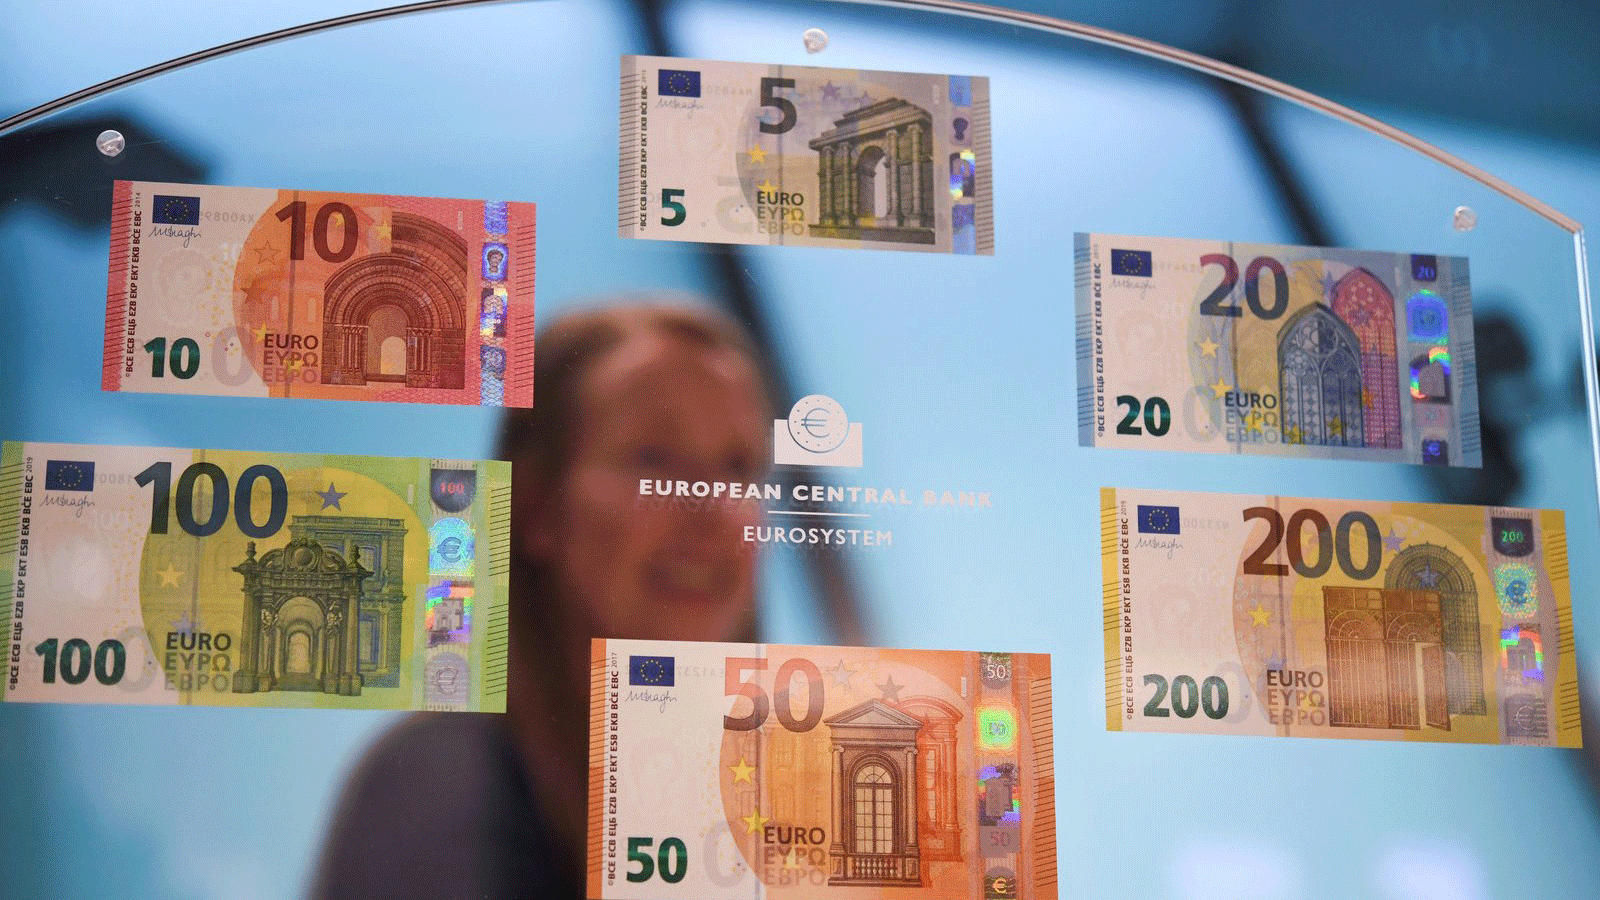 سيكون اليورو الرقمي أو الافتراضي نسخة إلكترونية من أوراق اليورو النقدية وقطعها المعدنية